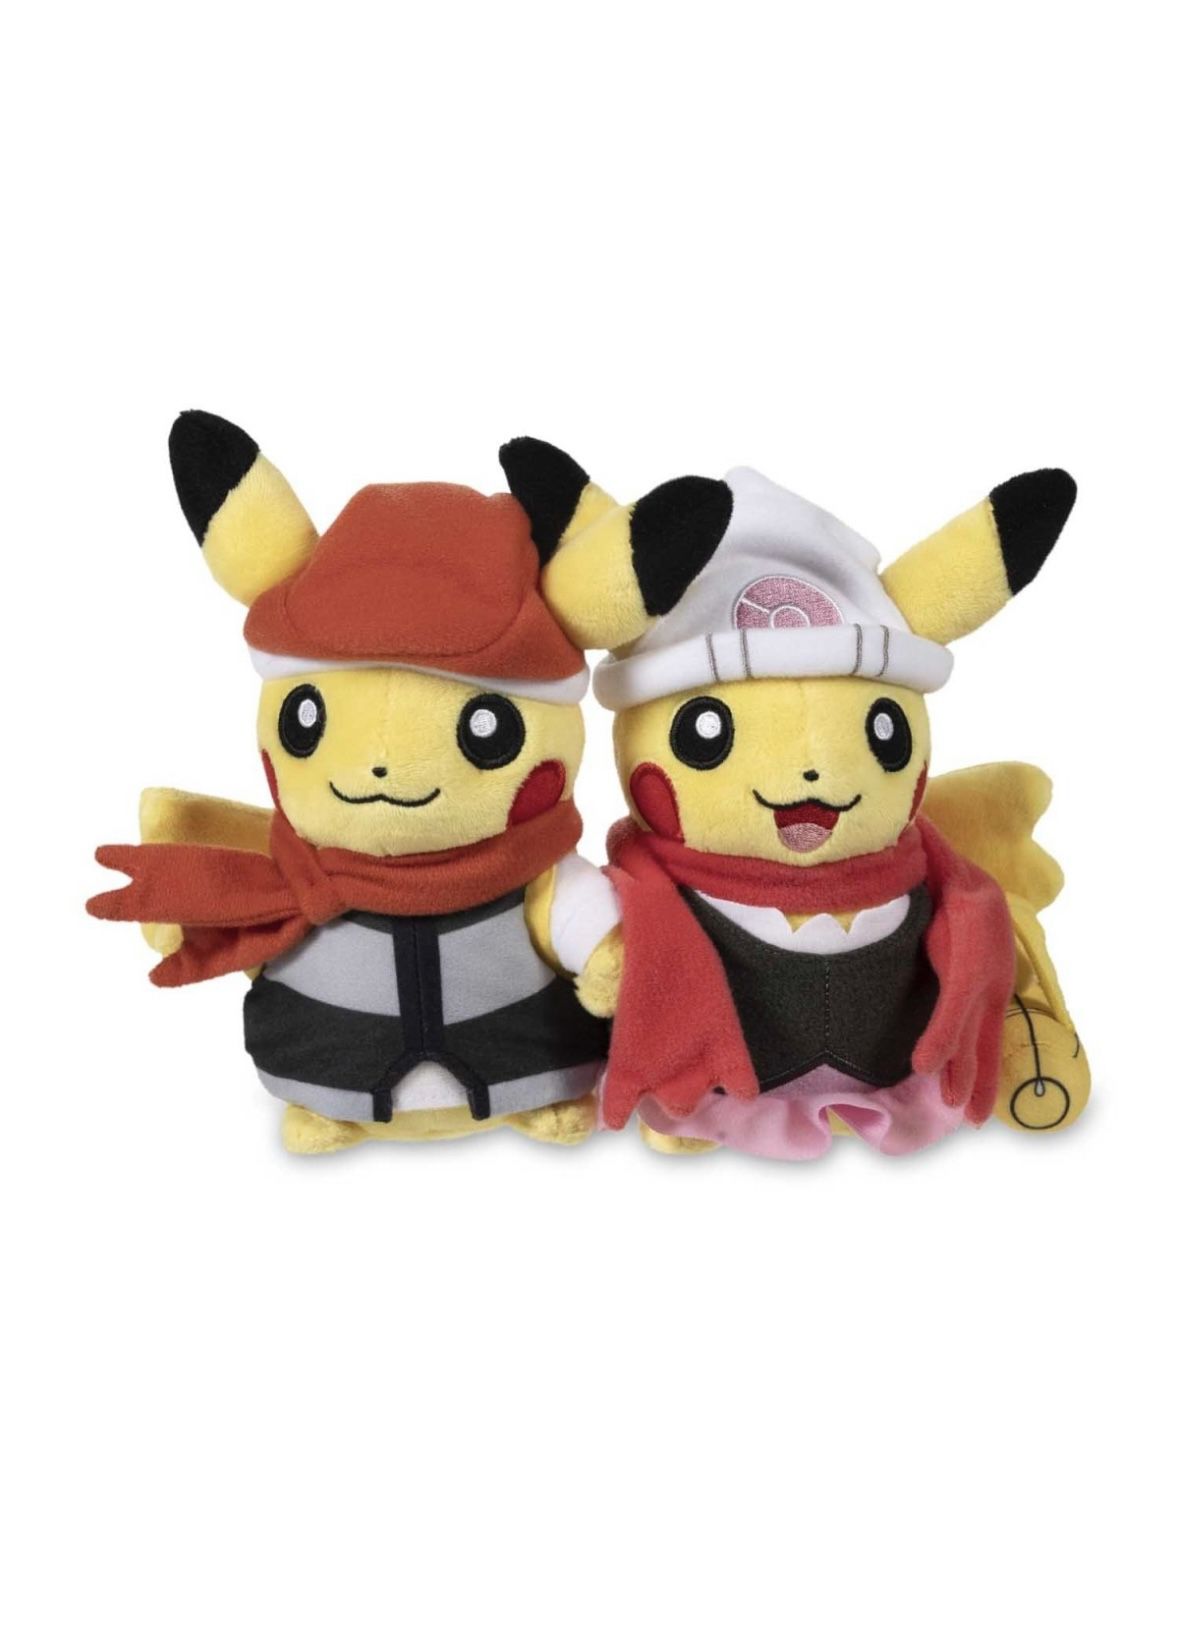 Pokemon Pikachu Sinnoh Region Plush Toy (Brand New)